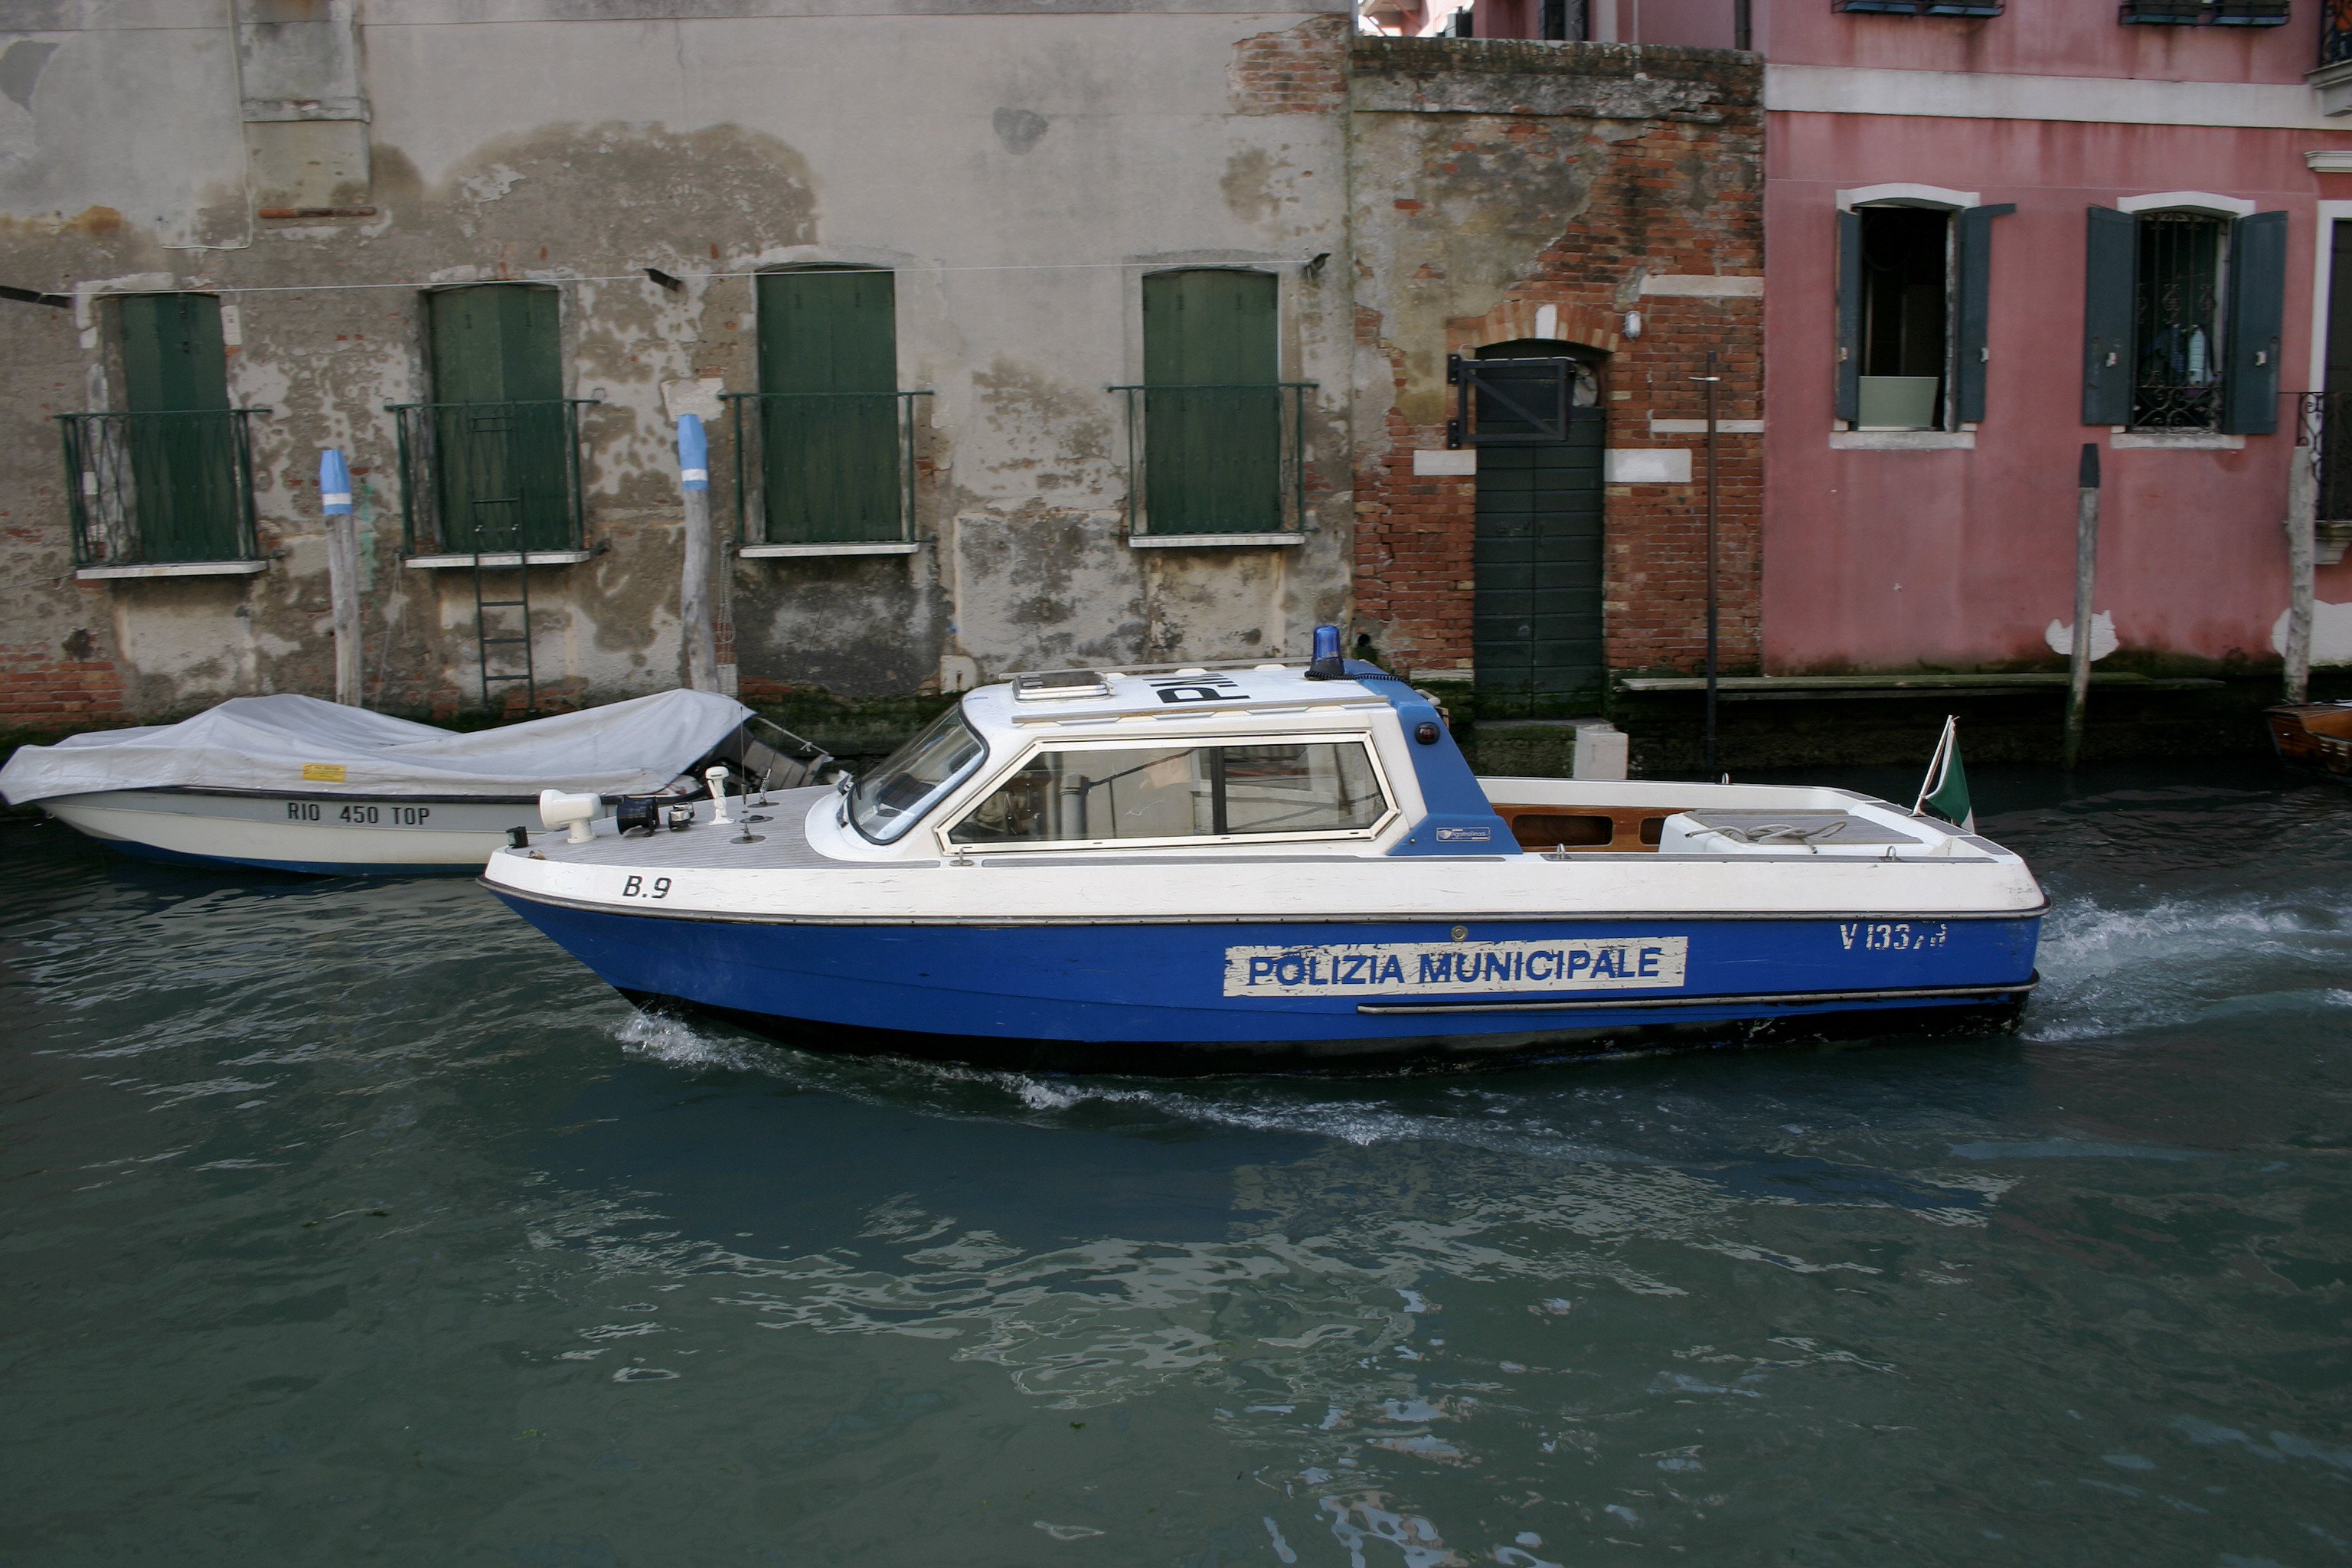 File:Venice - Police boat.jpg - Wikimedia Commons